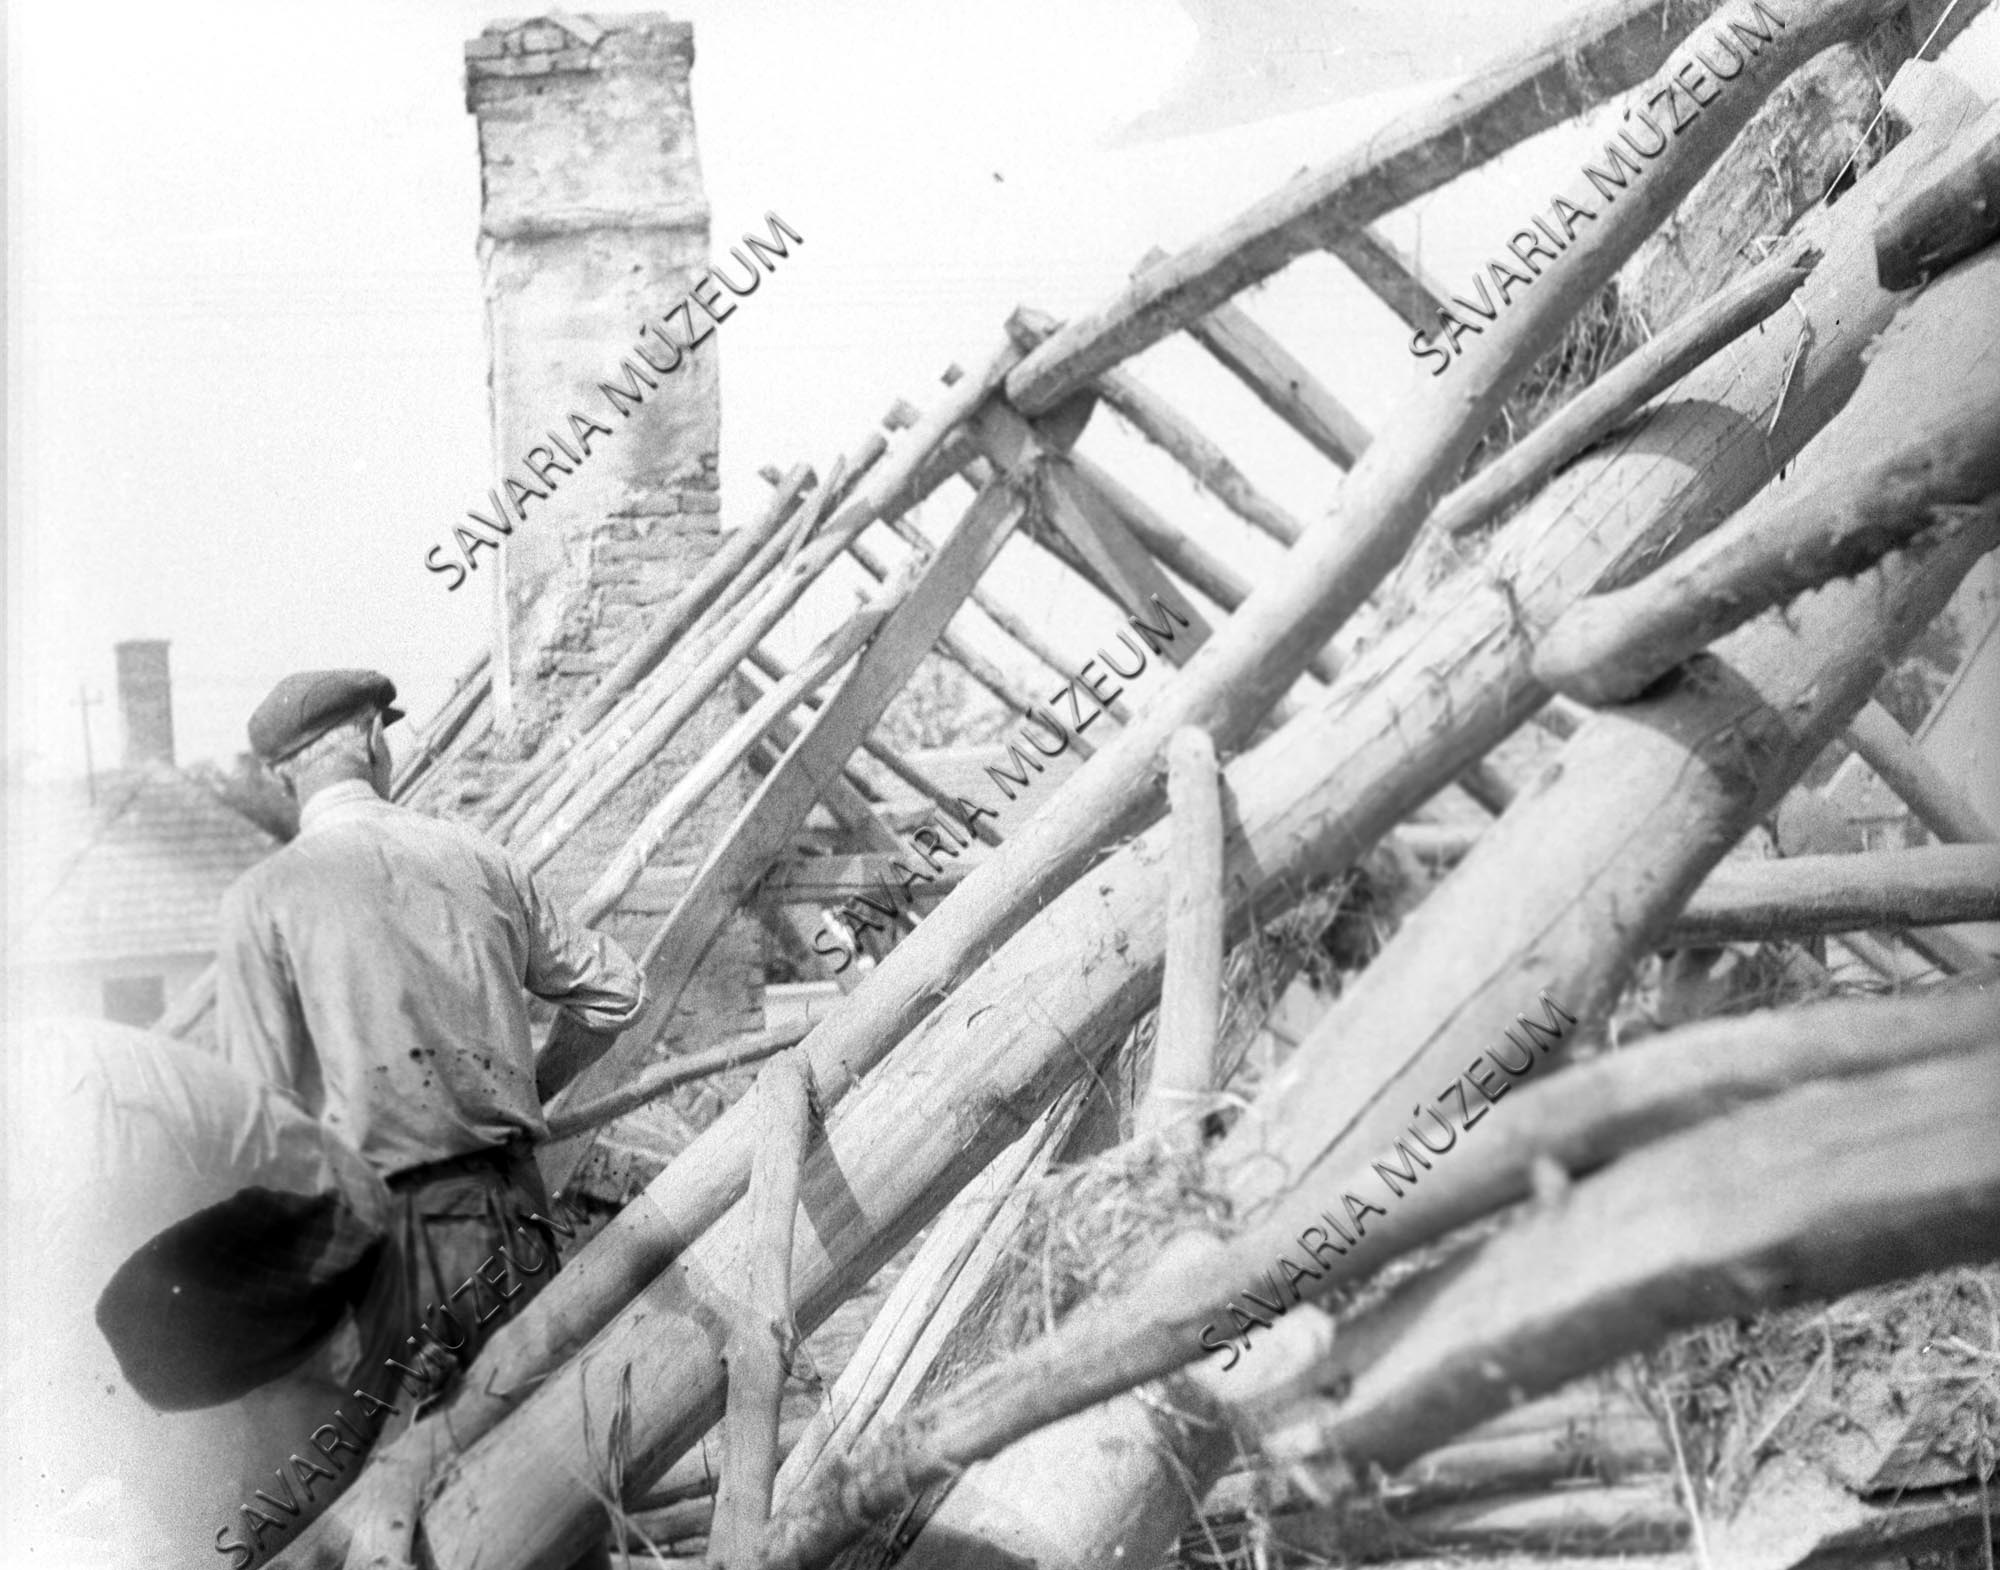 Ház tetőszerkezete bontás közben (Savaria Megyei Hatókörű Városi Múzeum, Szombathely CC BY-NC-SA)